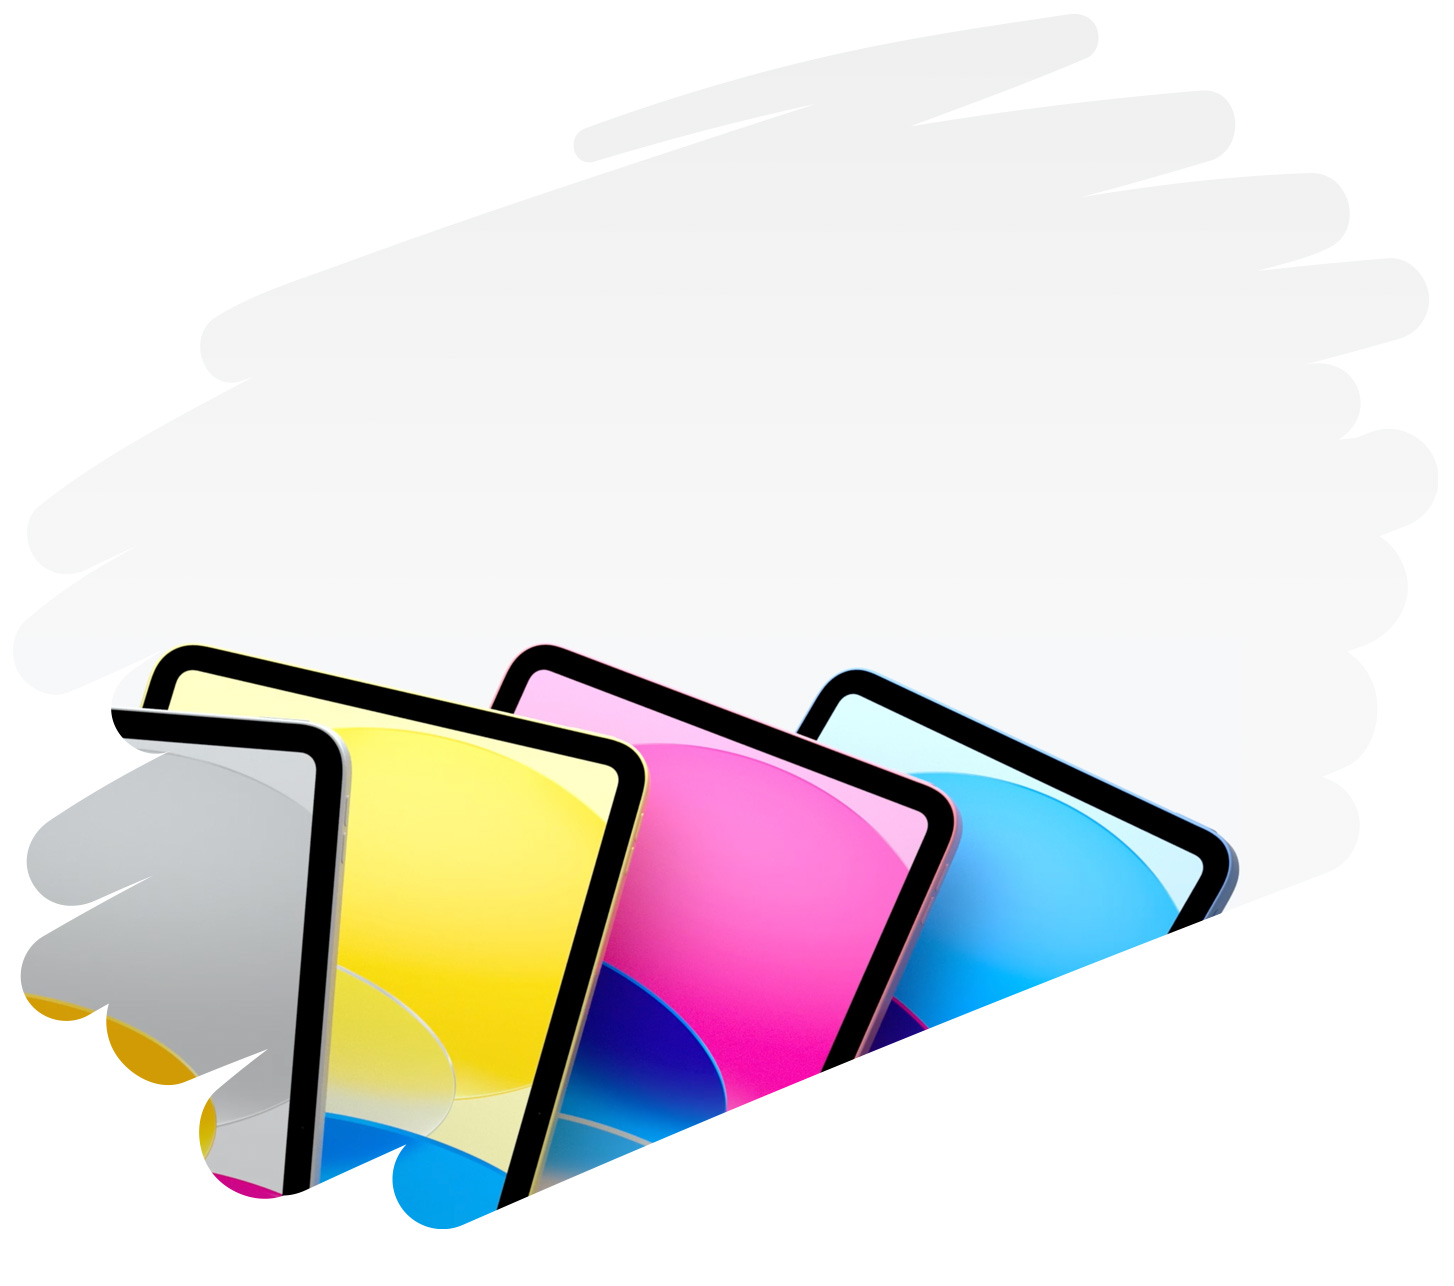 Kleurrijke iPad-modellen die worden getoond in een grote penseelstreek op de pagina.